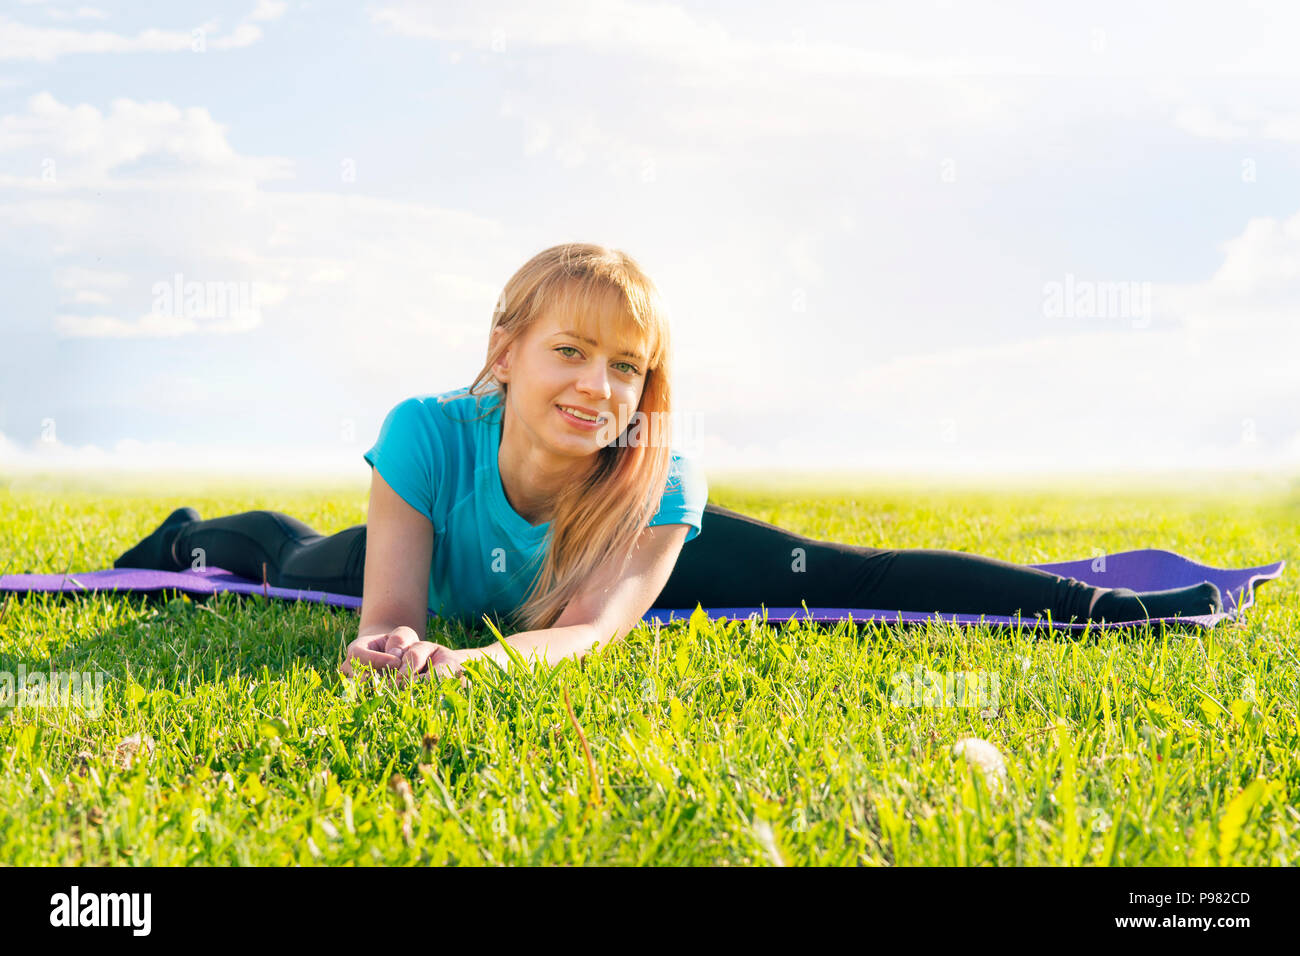 Eine blonde Frau Trainer in einem sportlichen kurzen Top und Fitnessraum leggings macht eine breite Garn auf der Wolldecke für Yoga Hände werden nach oben gerichtet auf die Yogamatte angehoben, auf einem Summ Stockfoto